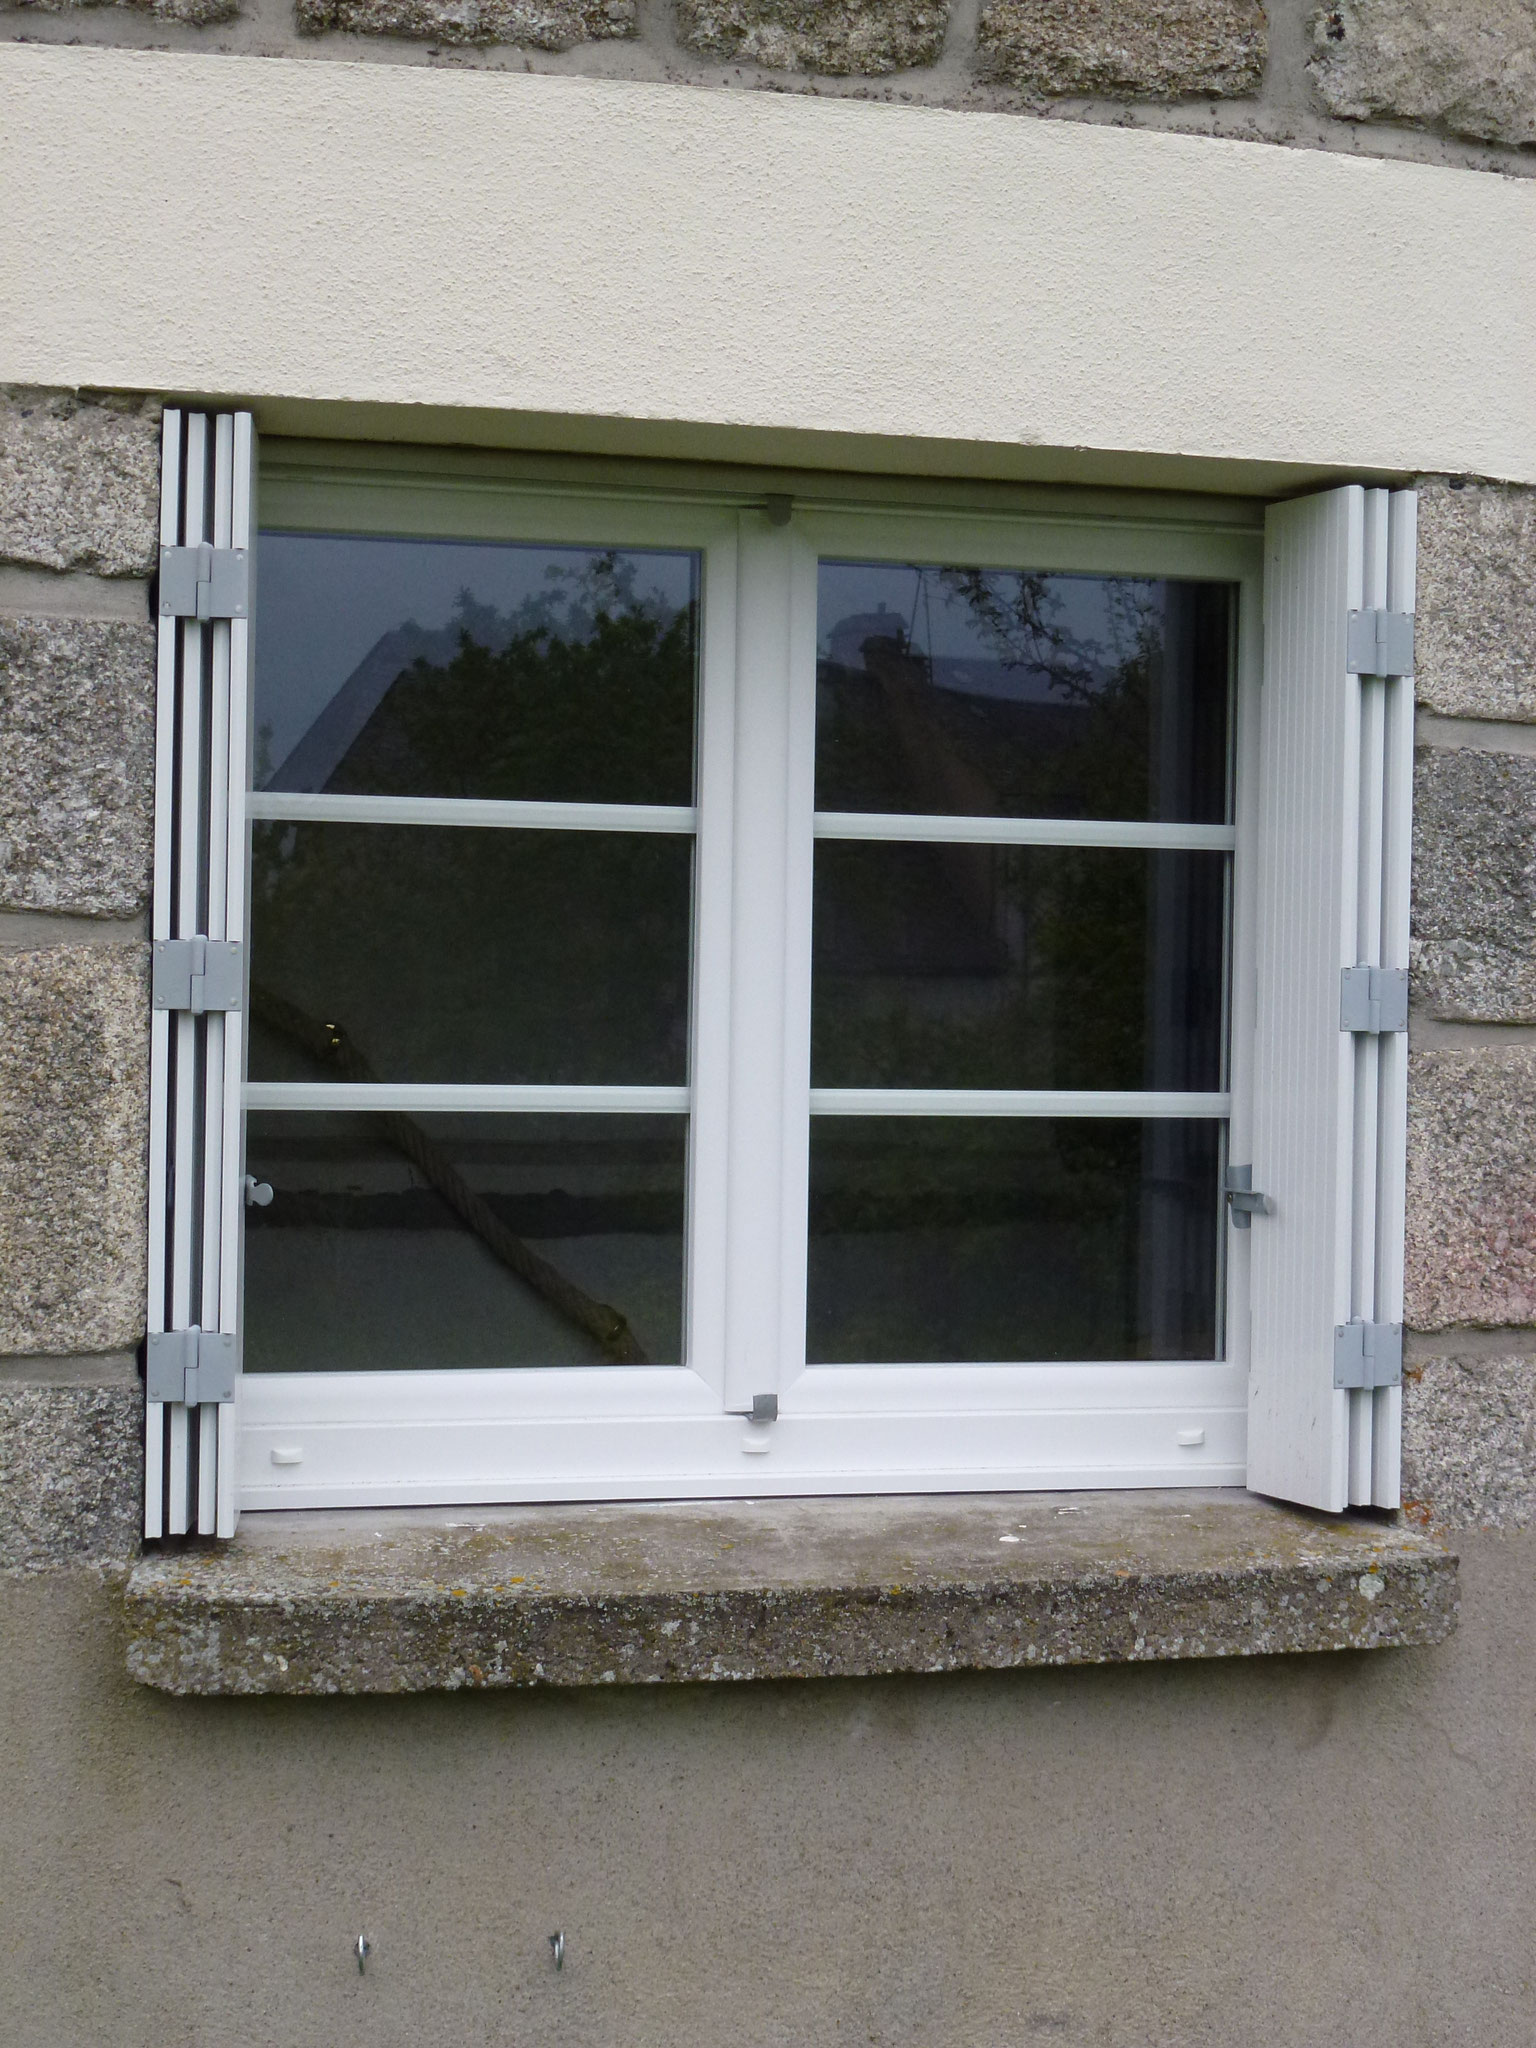 Fenêtre vue extérieur avec option petits bois incorporés dans le carreau et remise en service des volets PVC.